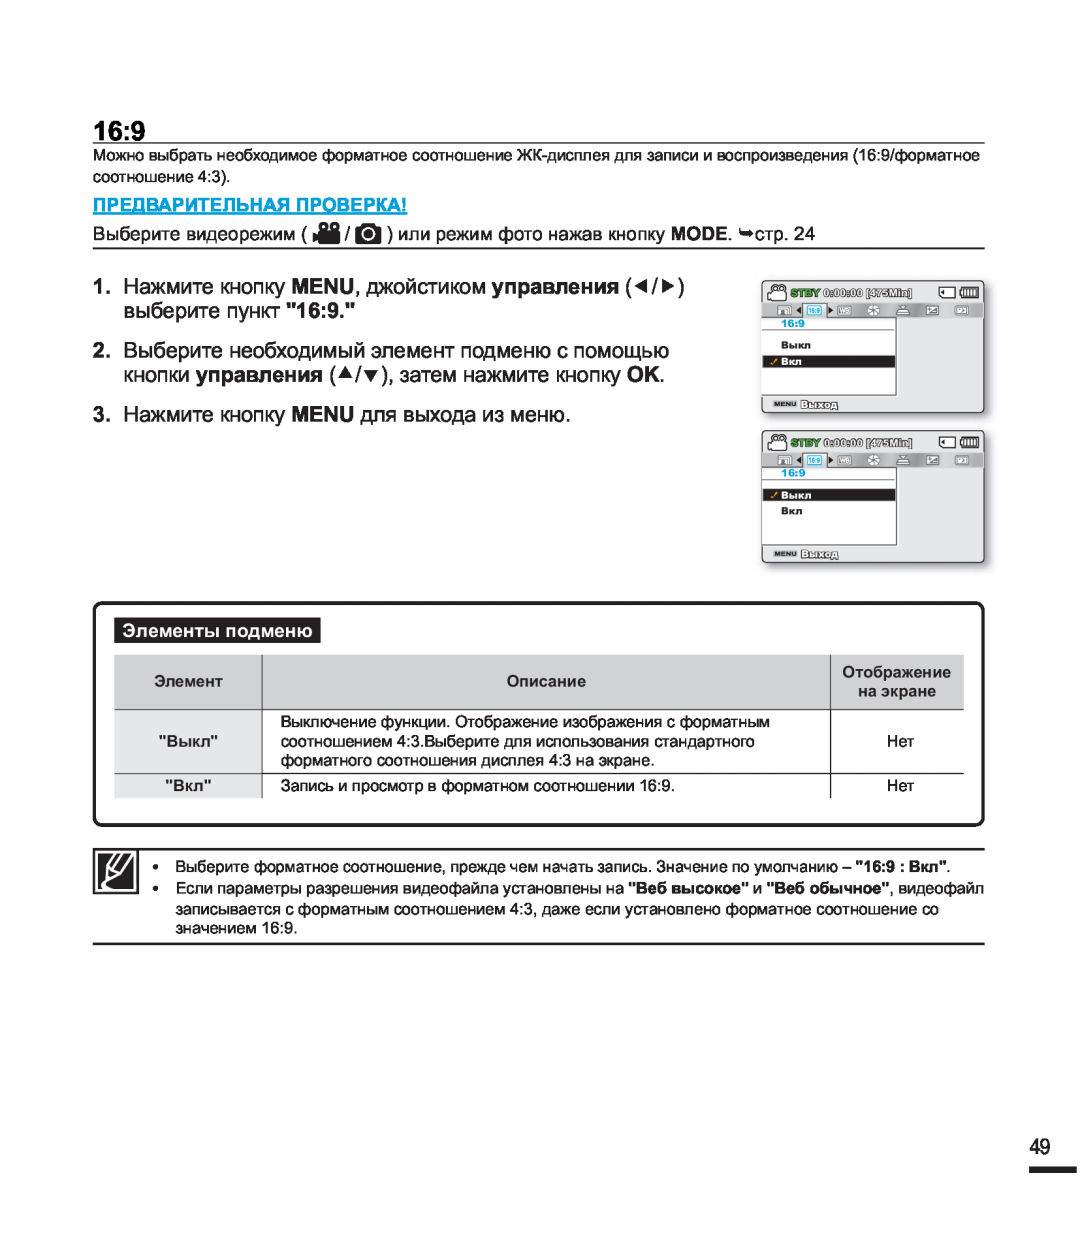 Samsung SMX-F44BP/XEK manual , ɉɊȿȾȼȺɊɂɌȿɅɖɇȺəɉɊɈȼȿɊɄȺ, ɗɥɟɦɟɧɬɵɩɨɞɦɟɧɸ, Ɉɩɢɫɚɧɢɟ, Ɉɬɨɛɪɚɠɟɧɢɟ, ȼɵɤɥ, ȼɤɥ 